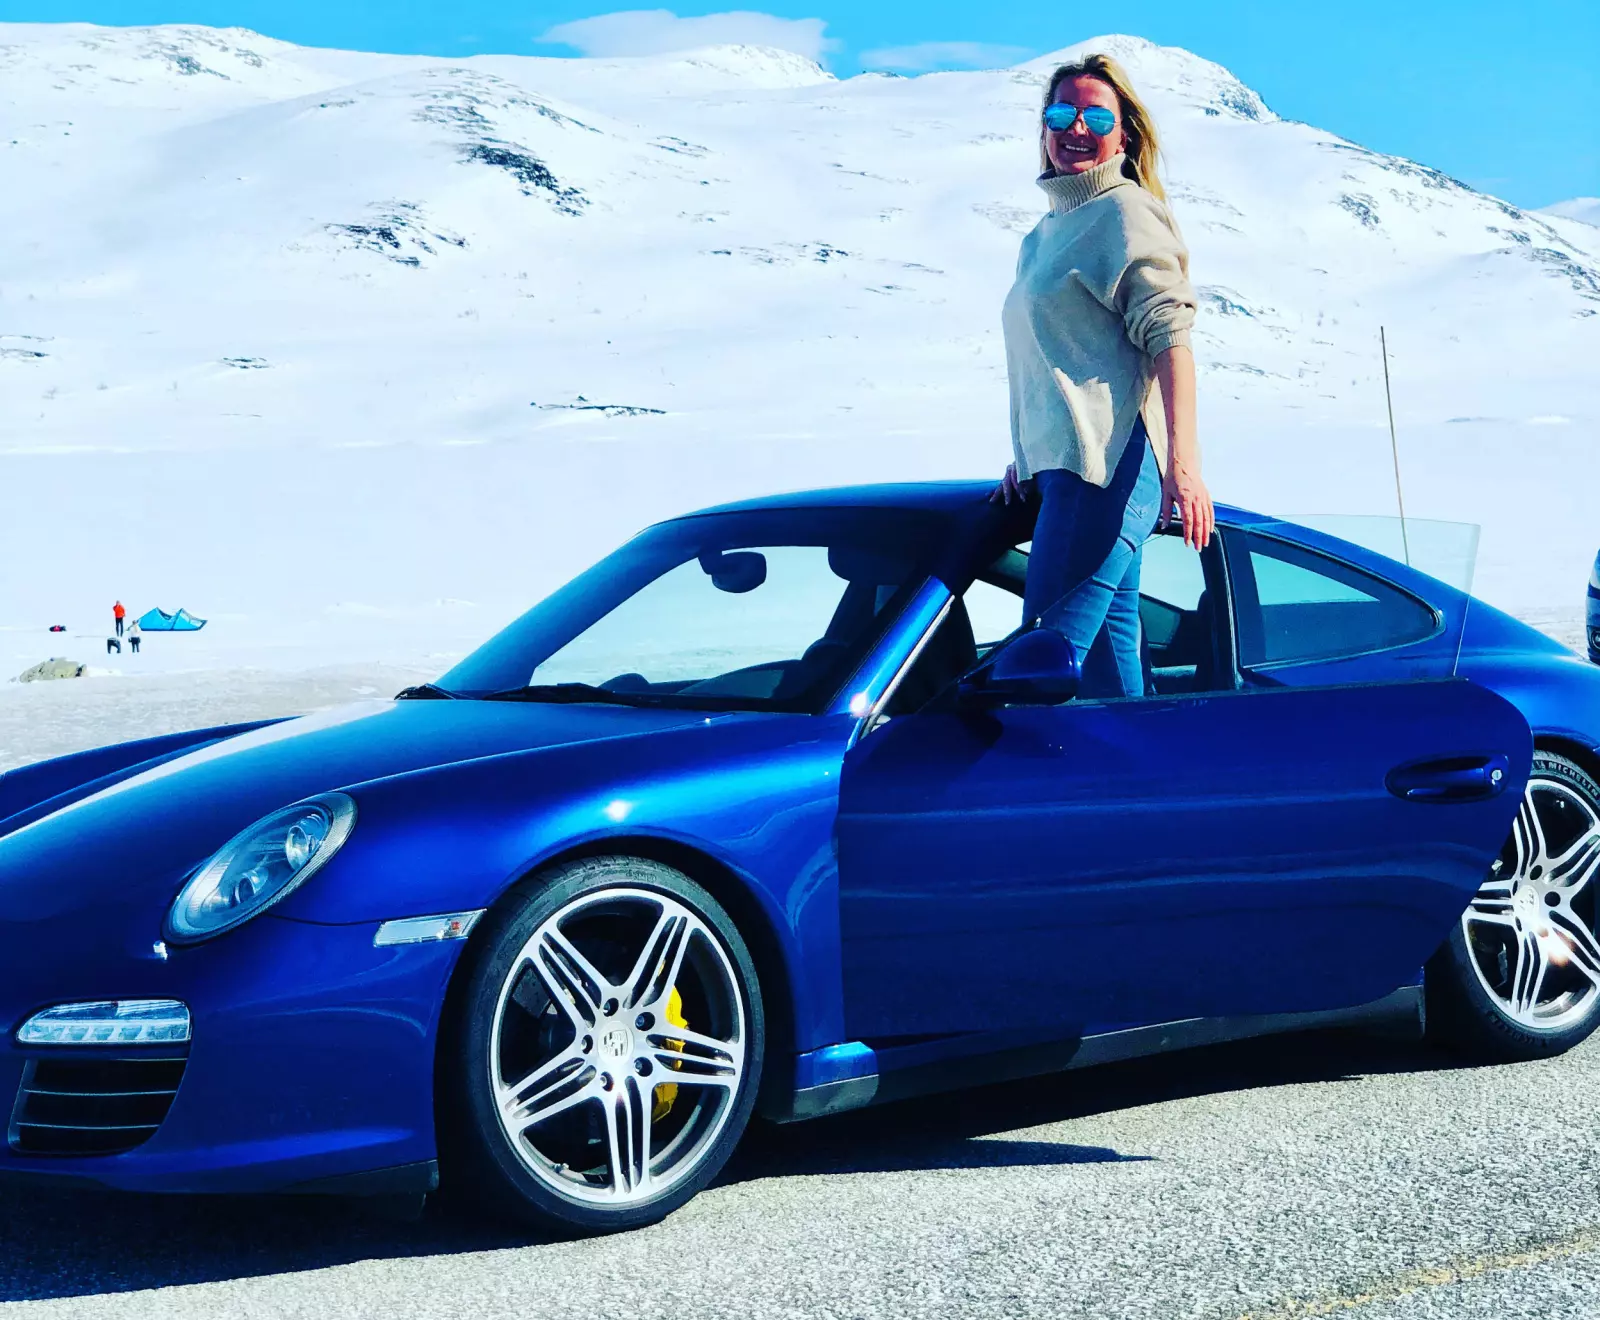 <b>PÅ HØYDEN: </b>Kimen til Kari Huebners Porsche-pasjon startet da hun som 18-åring bodde i Østerrike og observerte den aldrende Louise Piech, datteren til Ferdinand Porsche, i en flott sølvgrå 911.